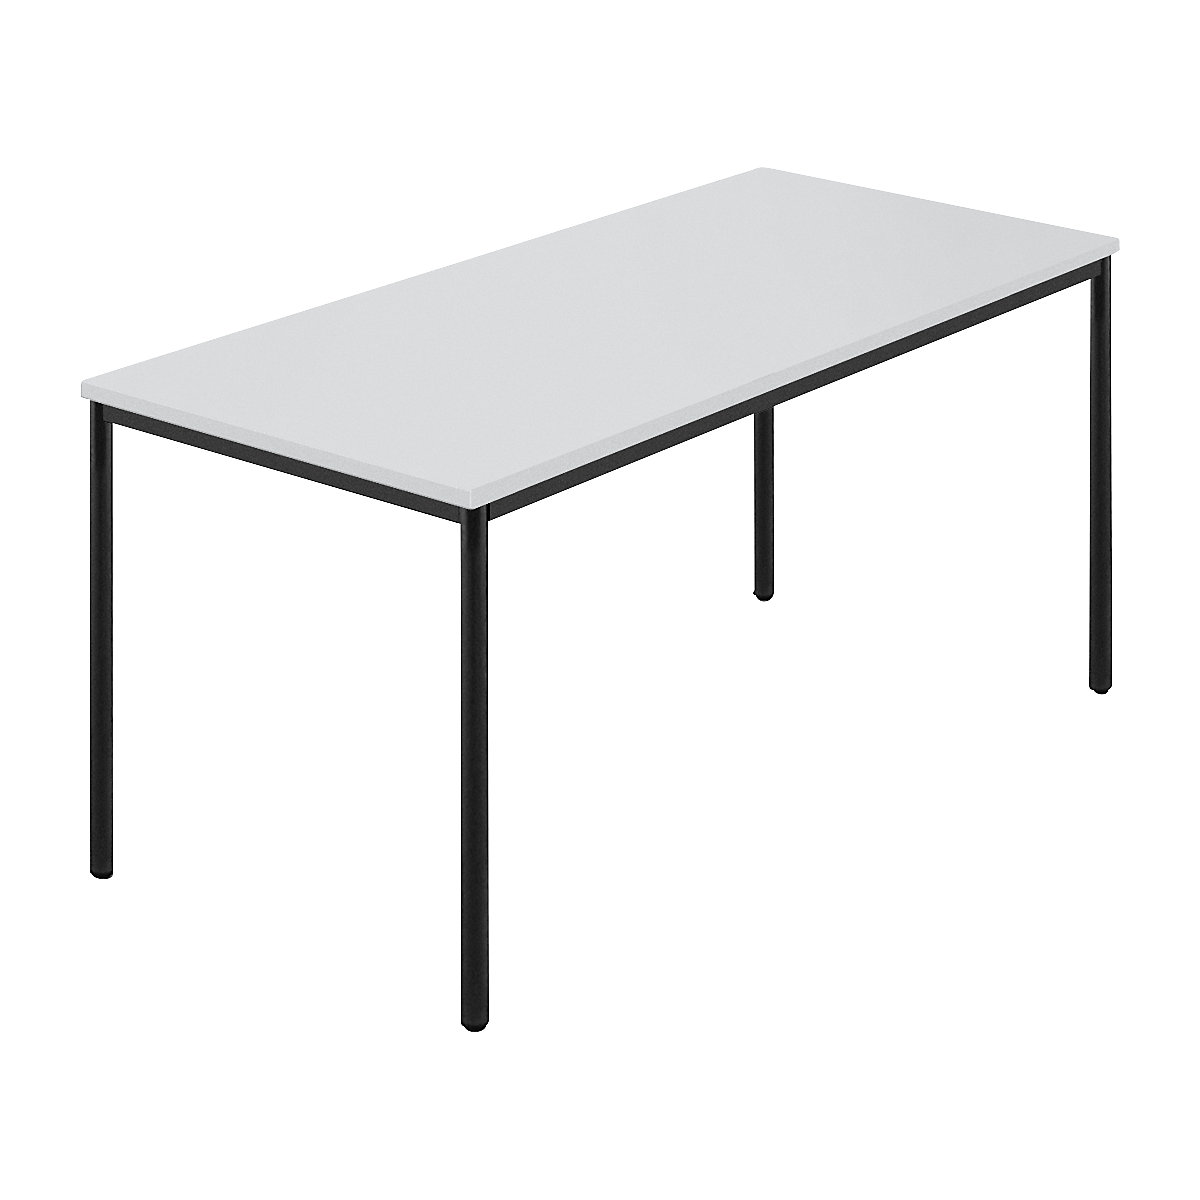 Rechthoekige tafel, ronde buis met coating, b x d = 1500 x 800 mm, grijs / antracietkleurig-6